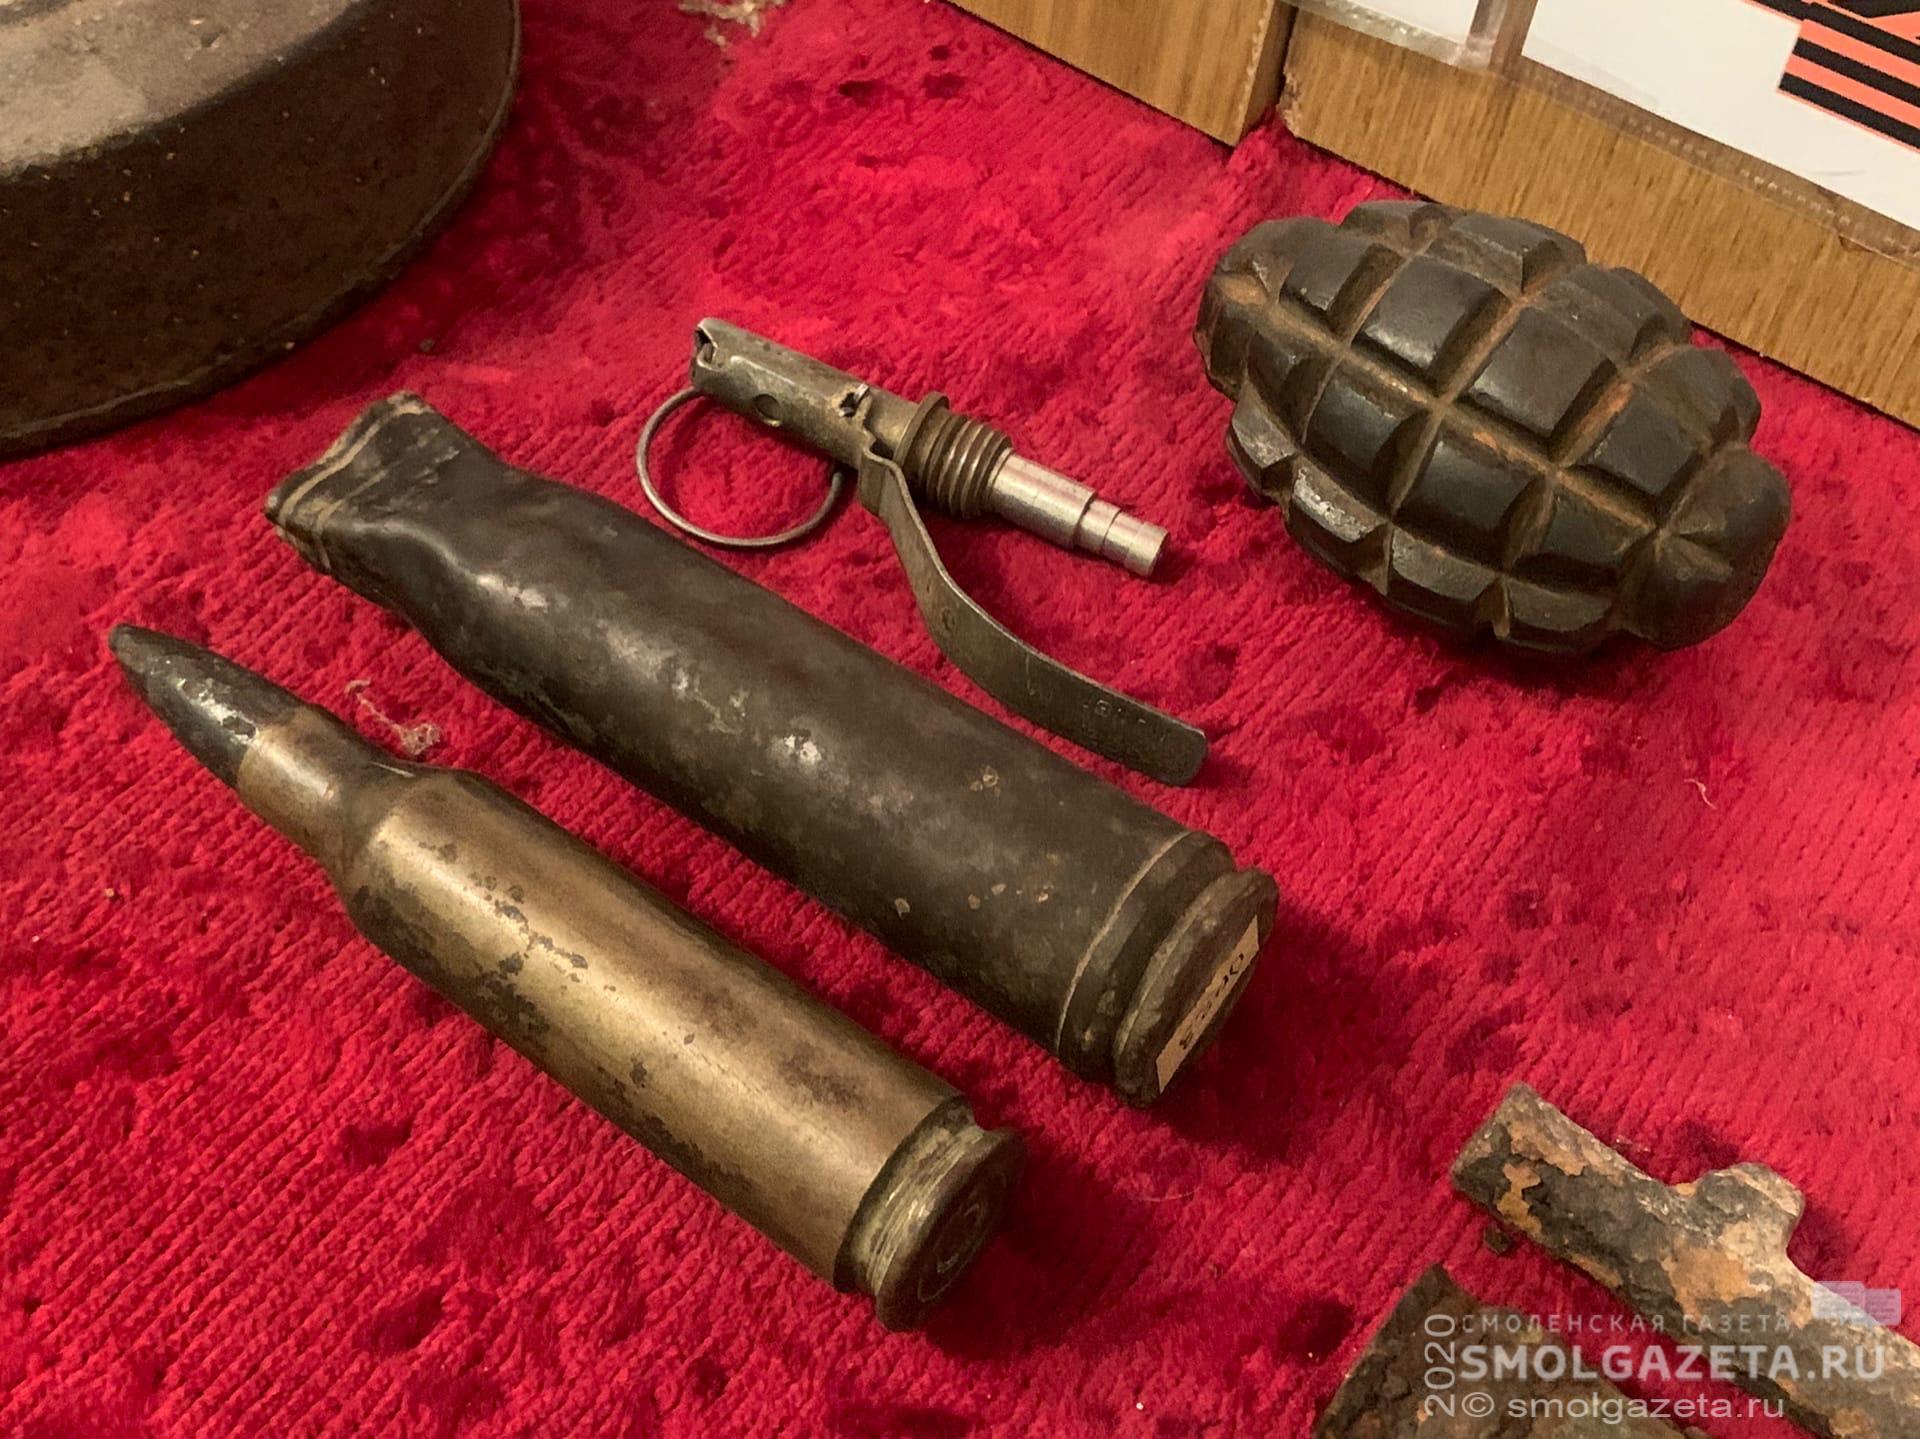 В Смоленской области обнаружили 32 взрывоопасных предмета